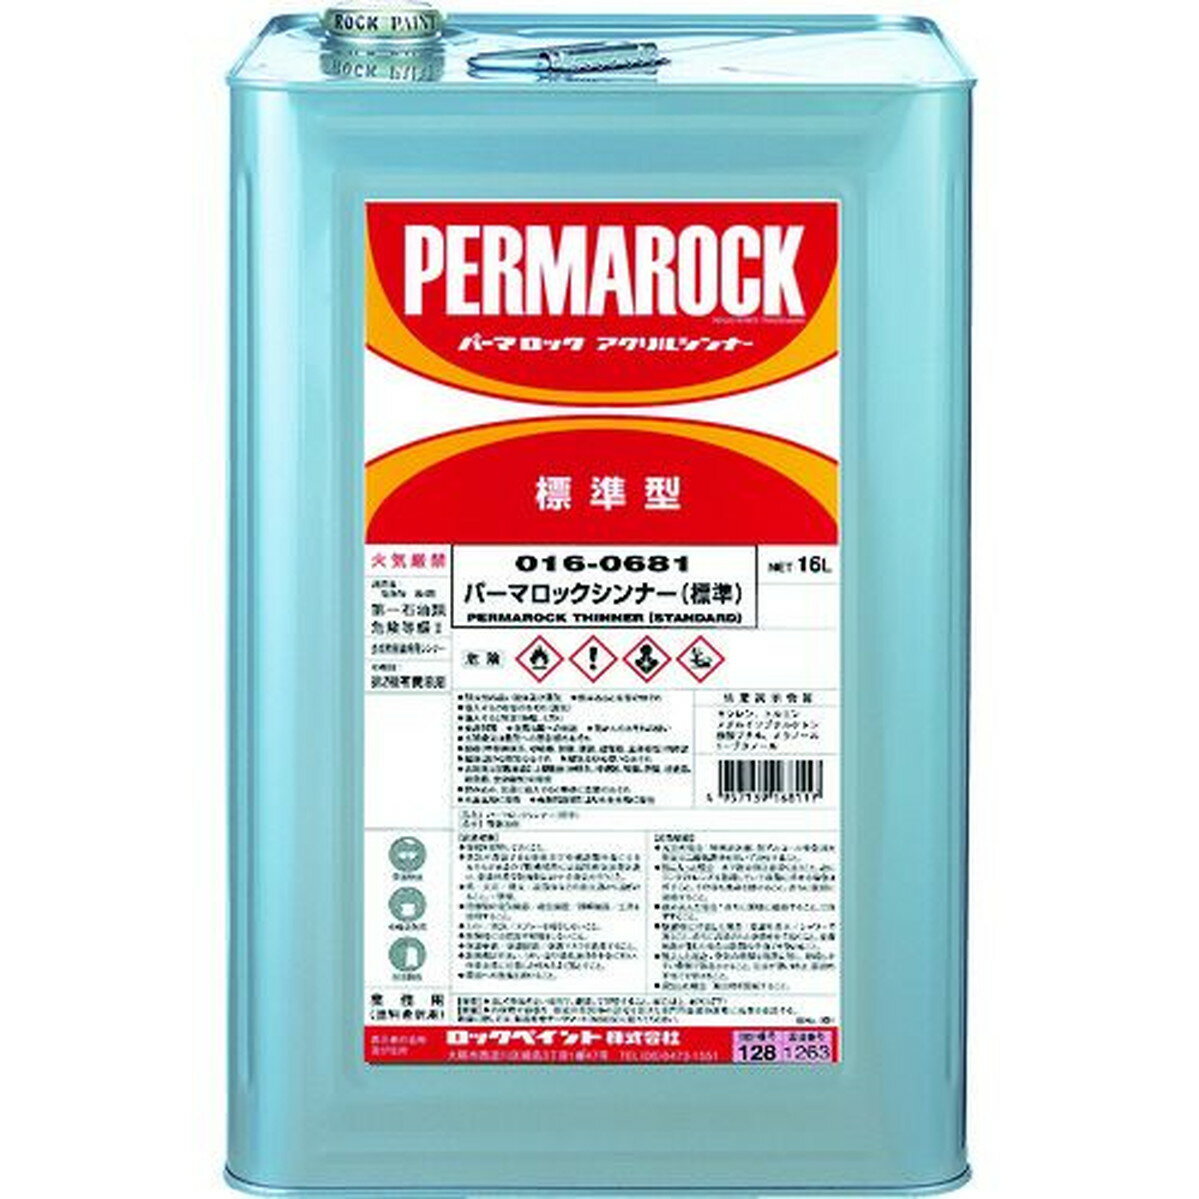 ロック パーマロックシンナー 16L 1缶 (016-0681 01)